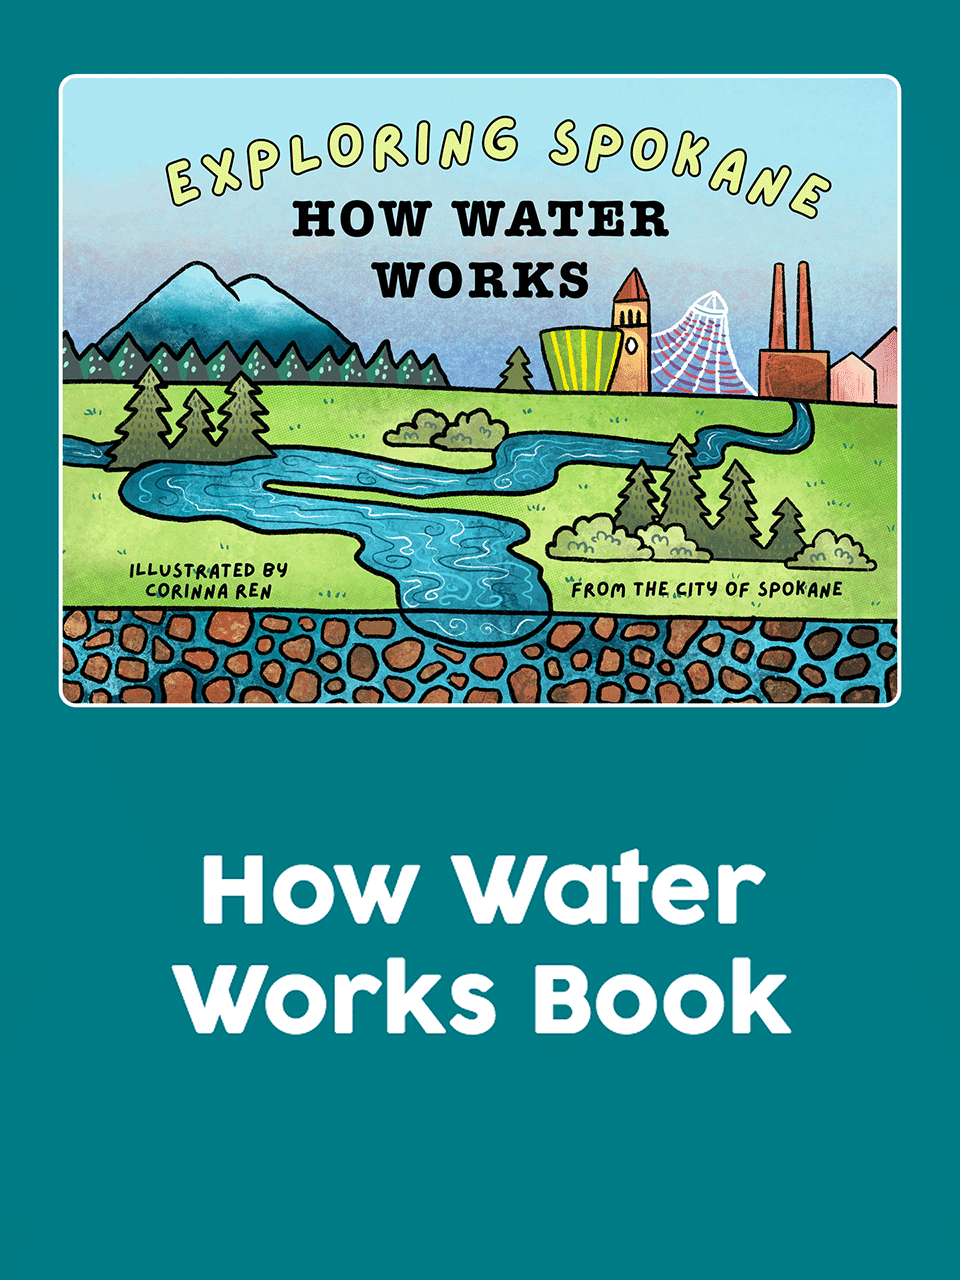 Exploring Spokane - How Water Works